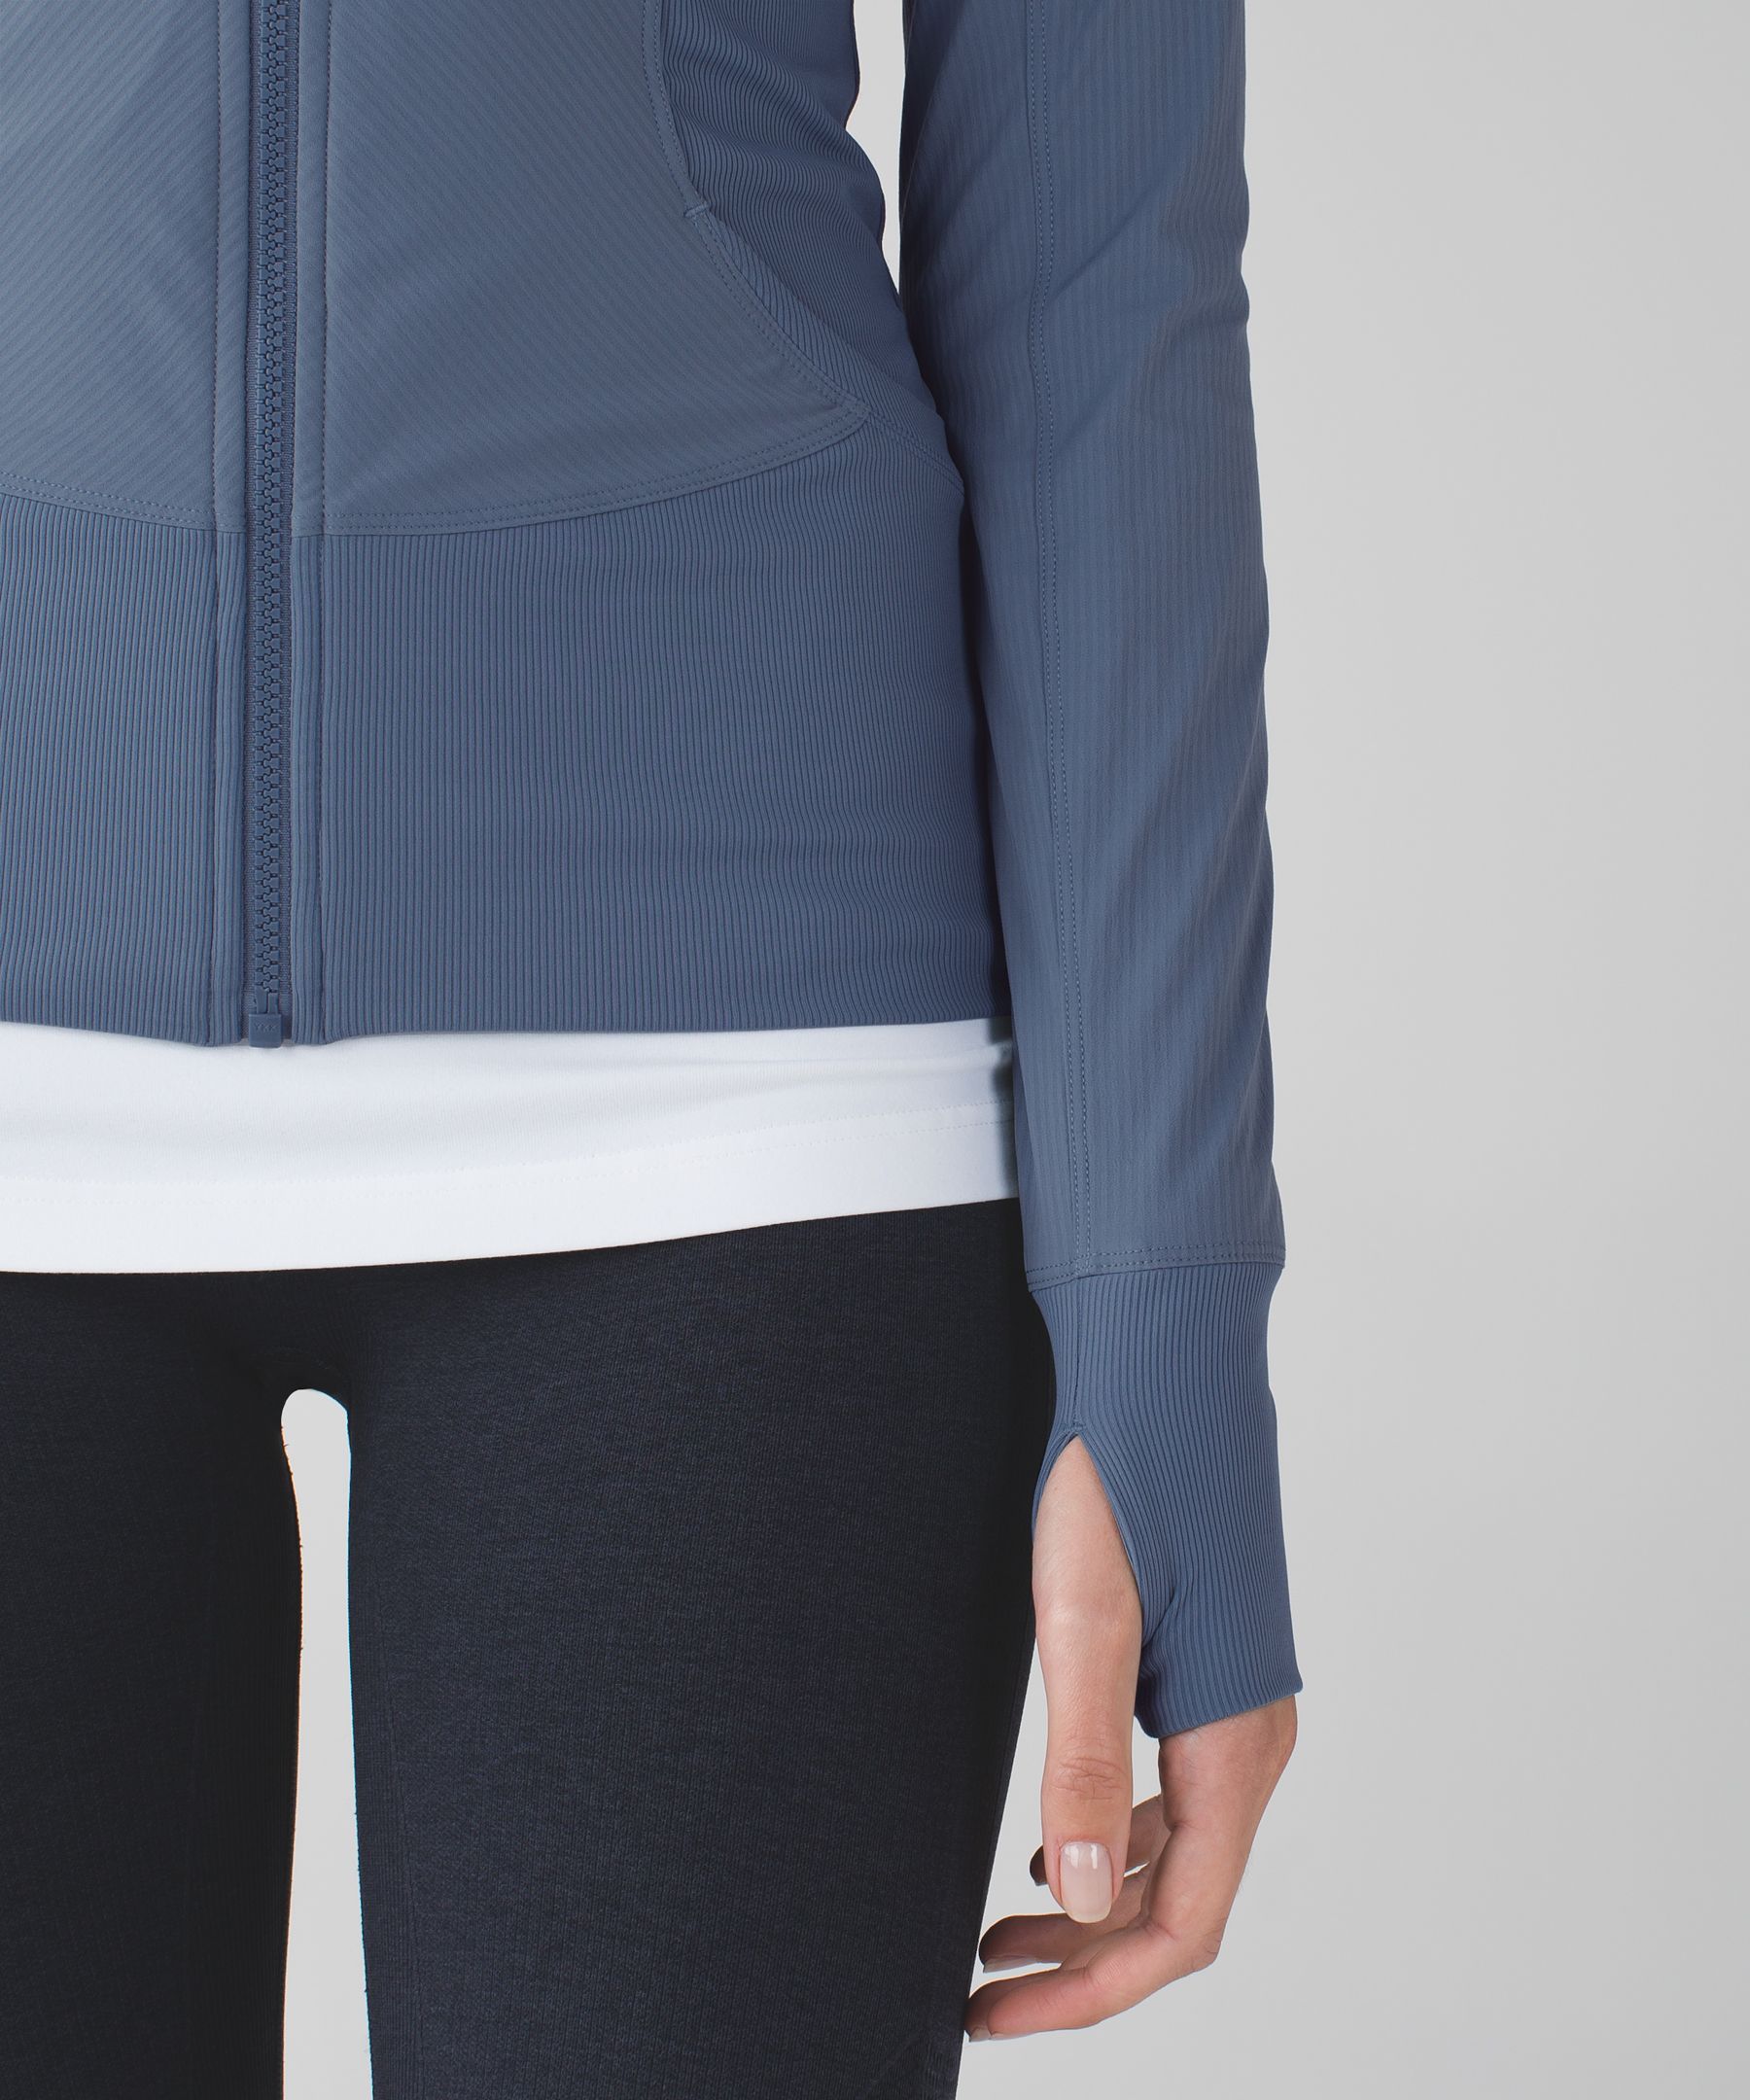 in flux jacket | women's jackets | lululemon athletica